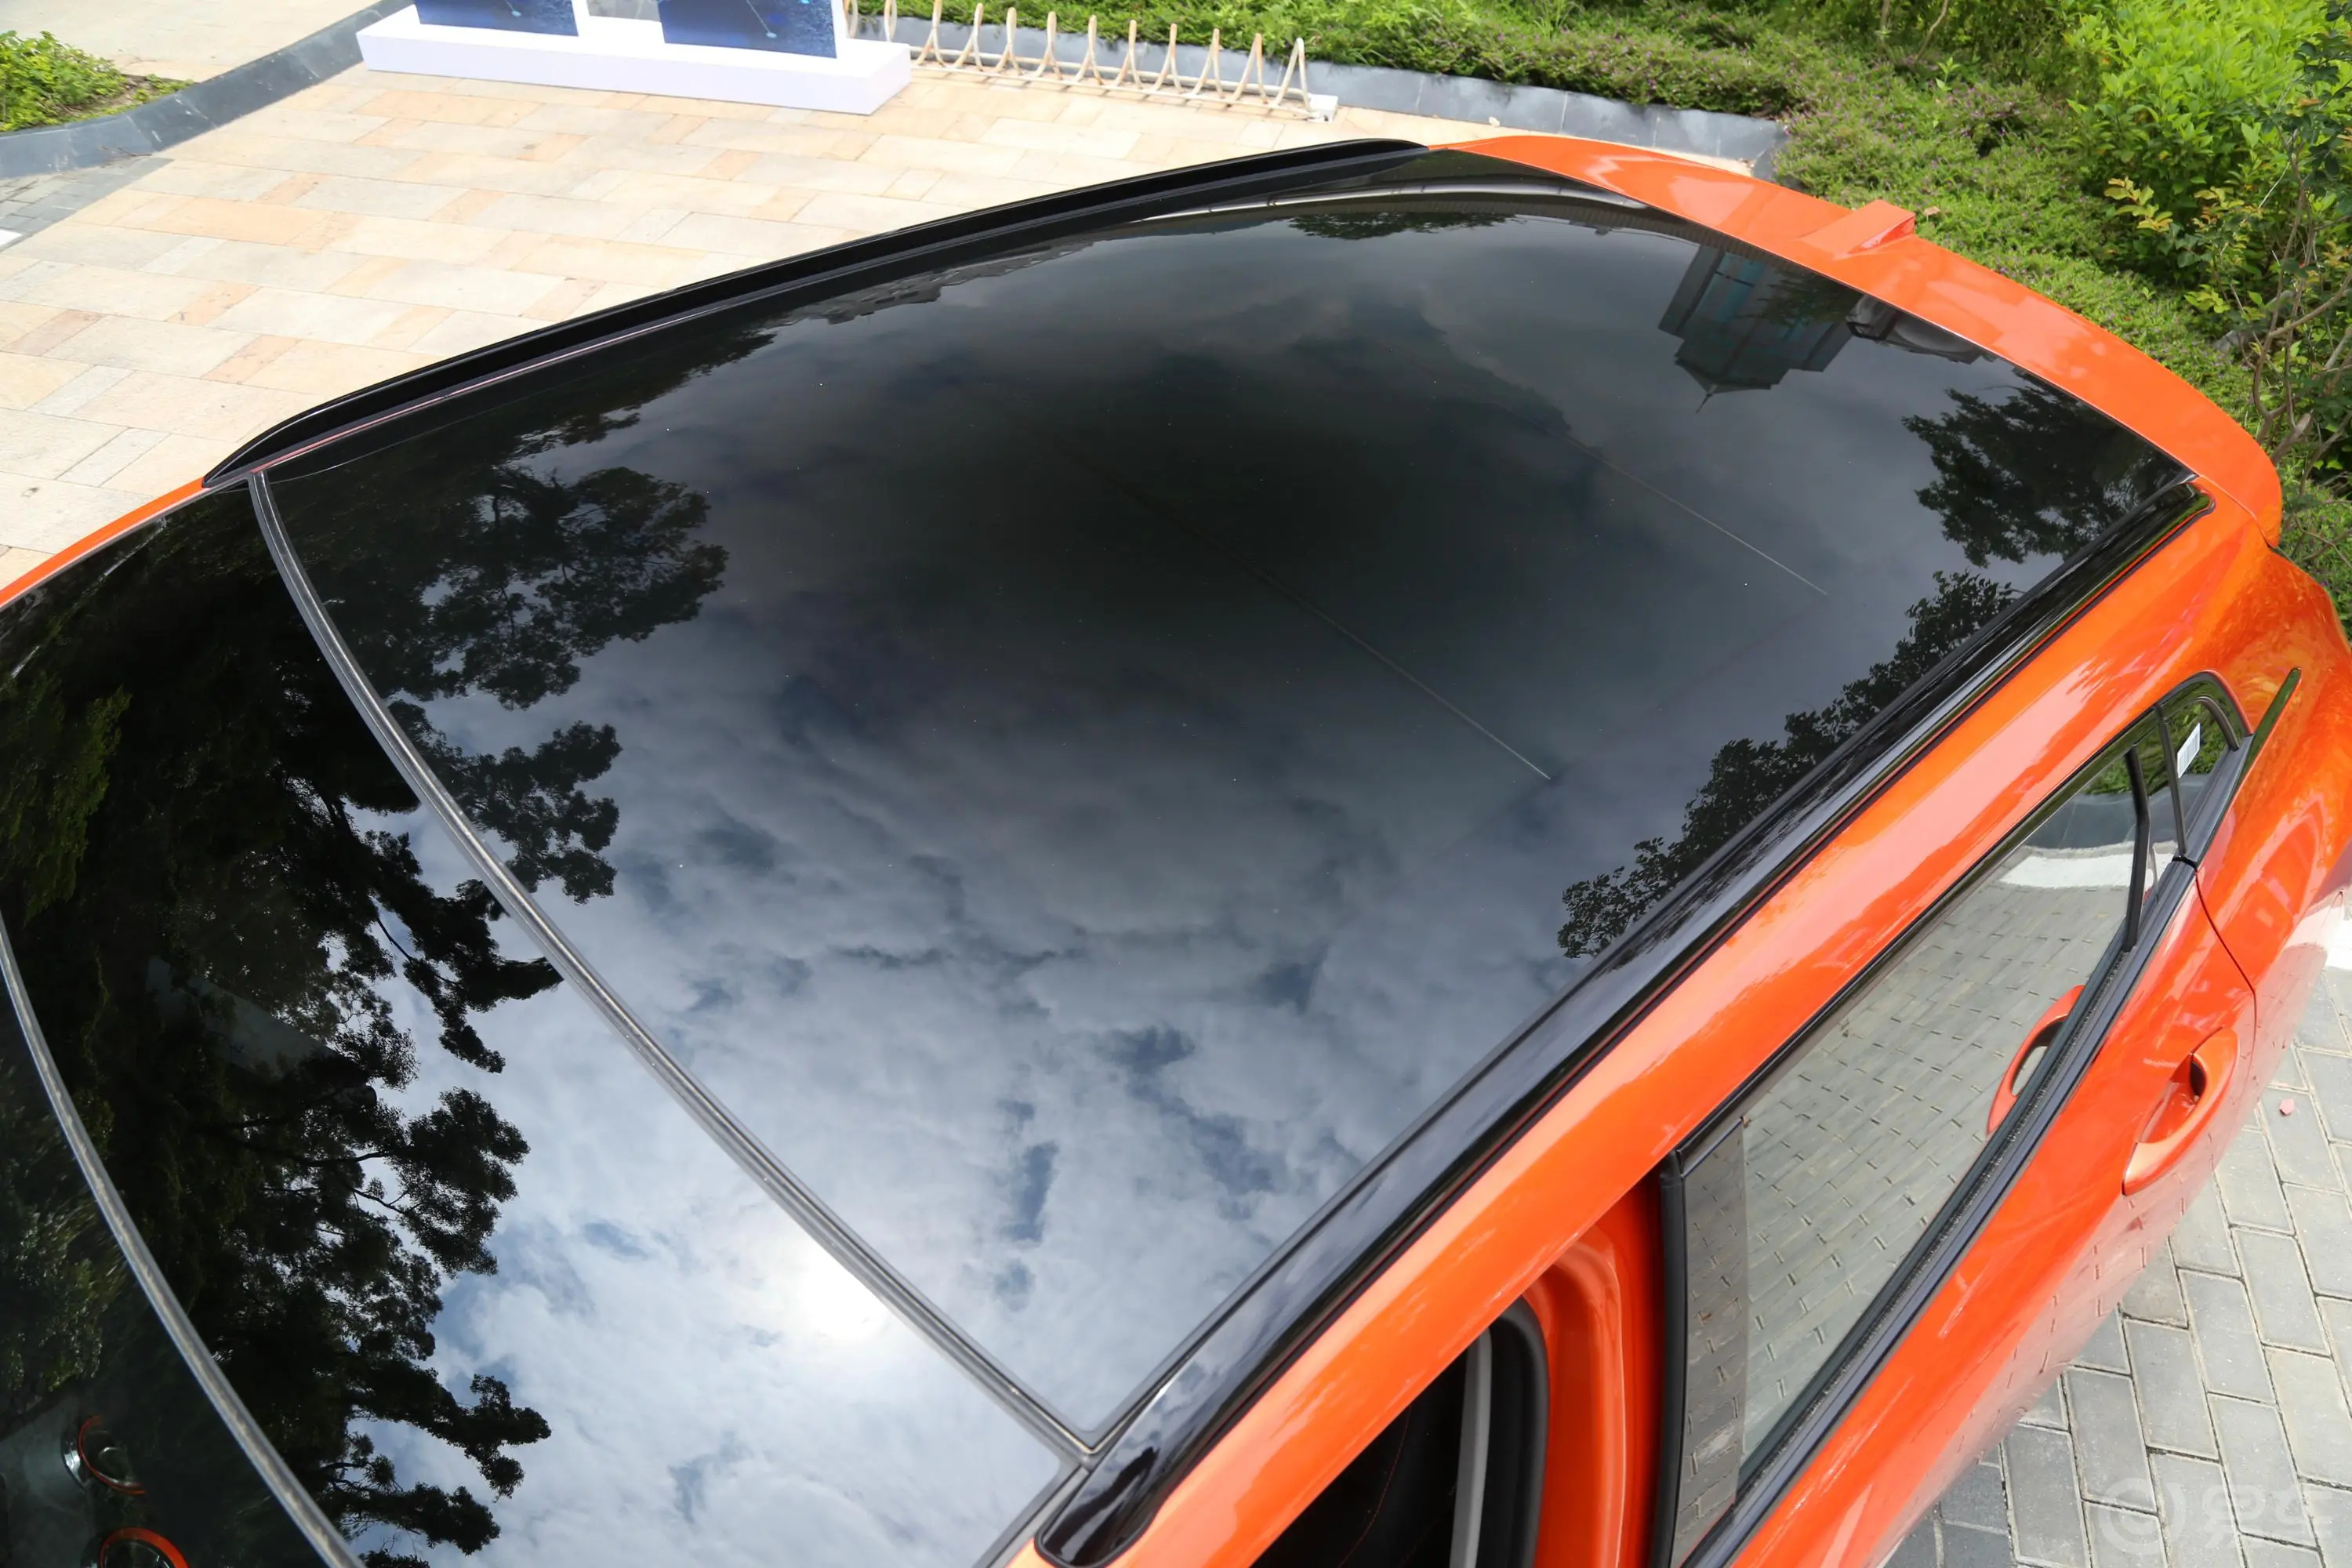 魏牌VV51.5T 双离合 两驱 倾橙限量版天窗